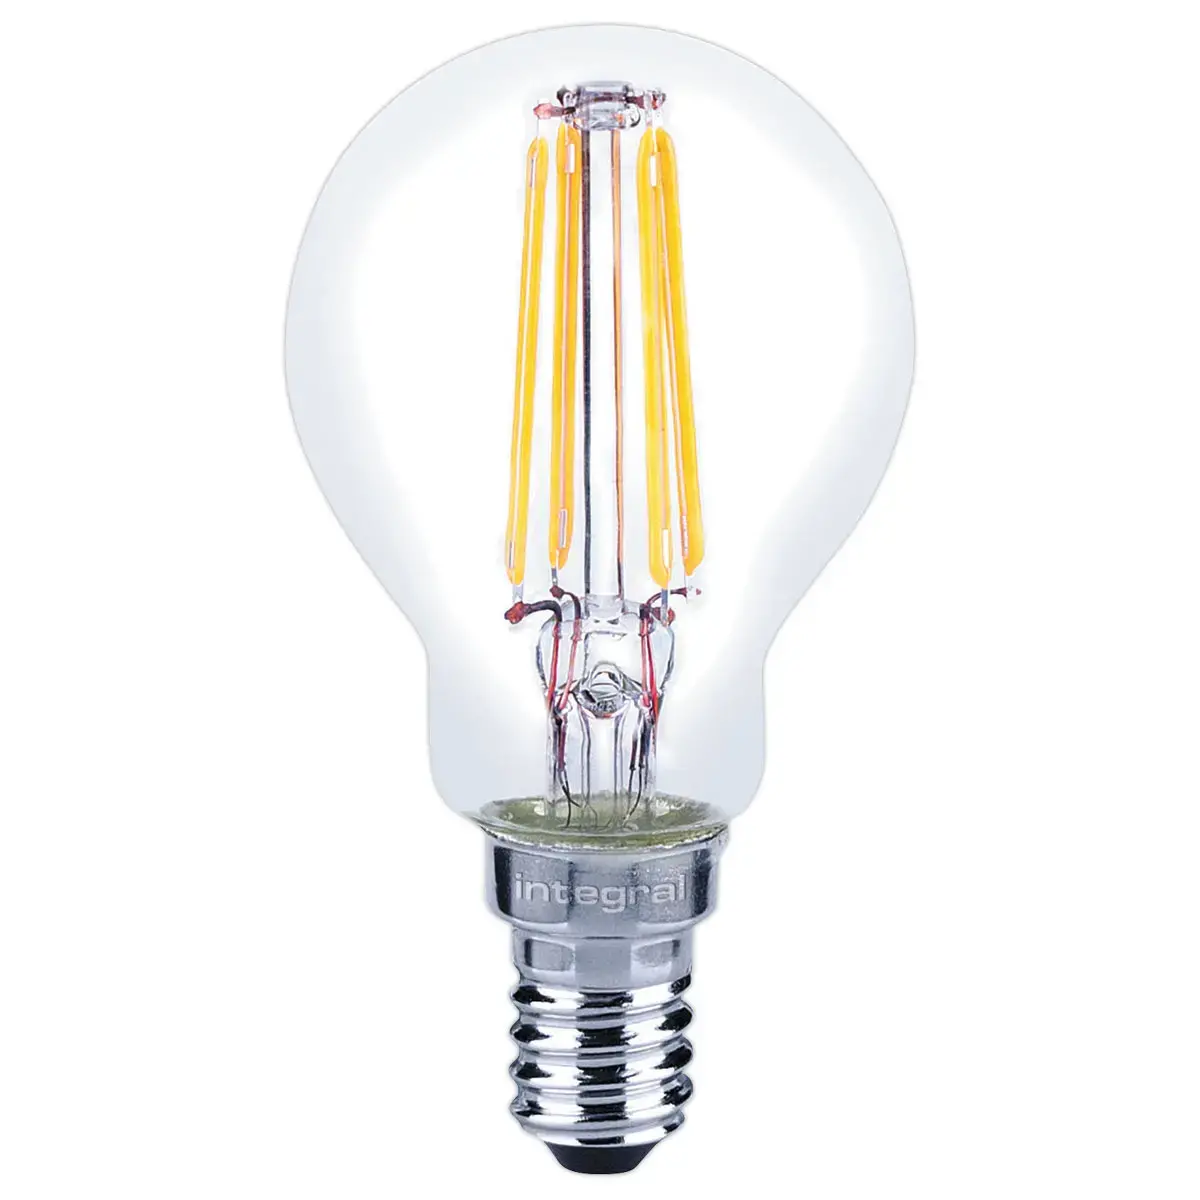 Ampoule LED Mini globe Filament E14 4.2W 470LM 2700K claire photo du produit